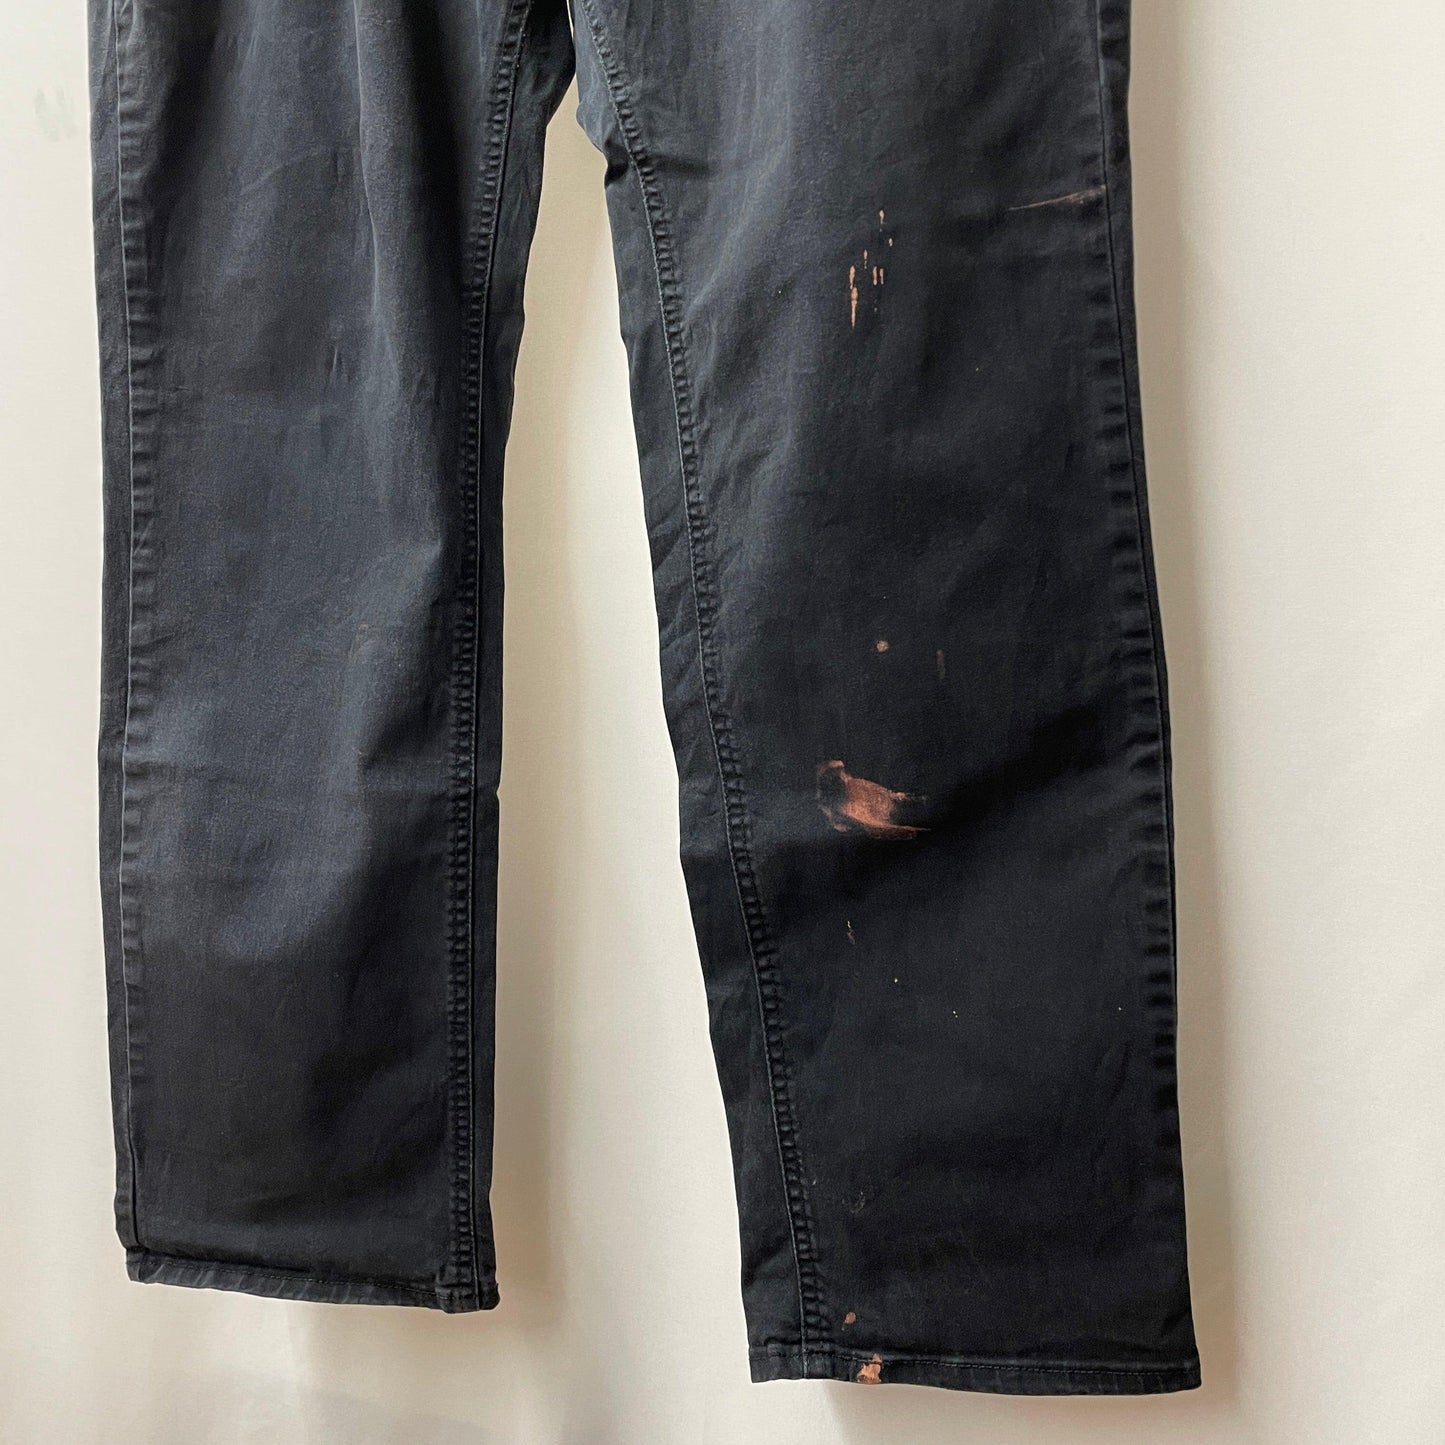 SIGNATURE DENIM levi's s67 jeans/denim black denim black